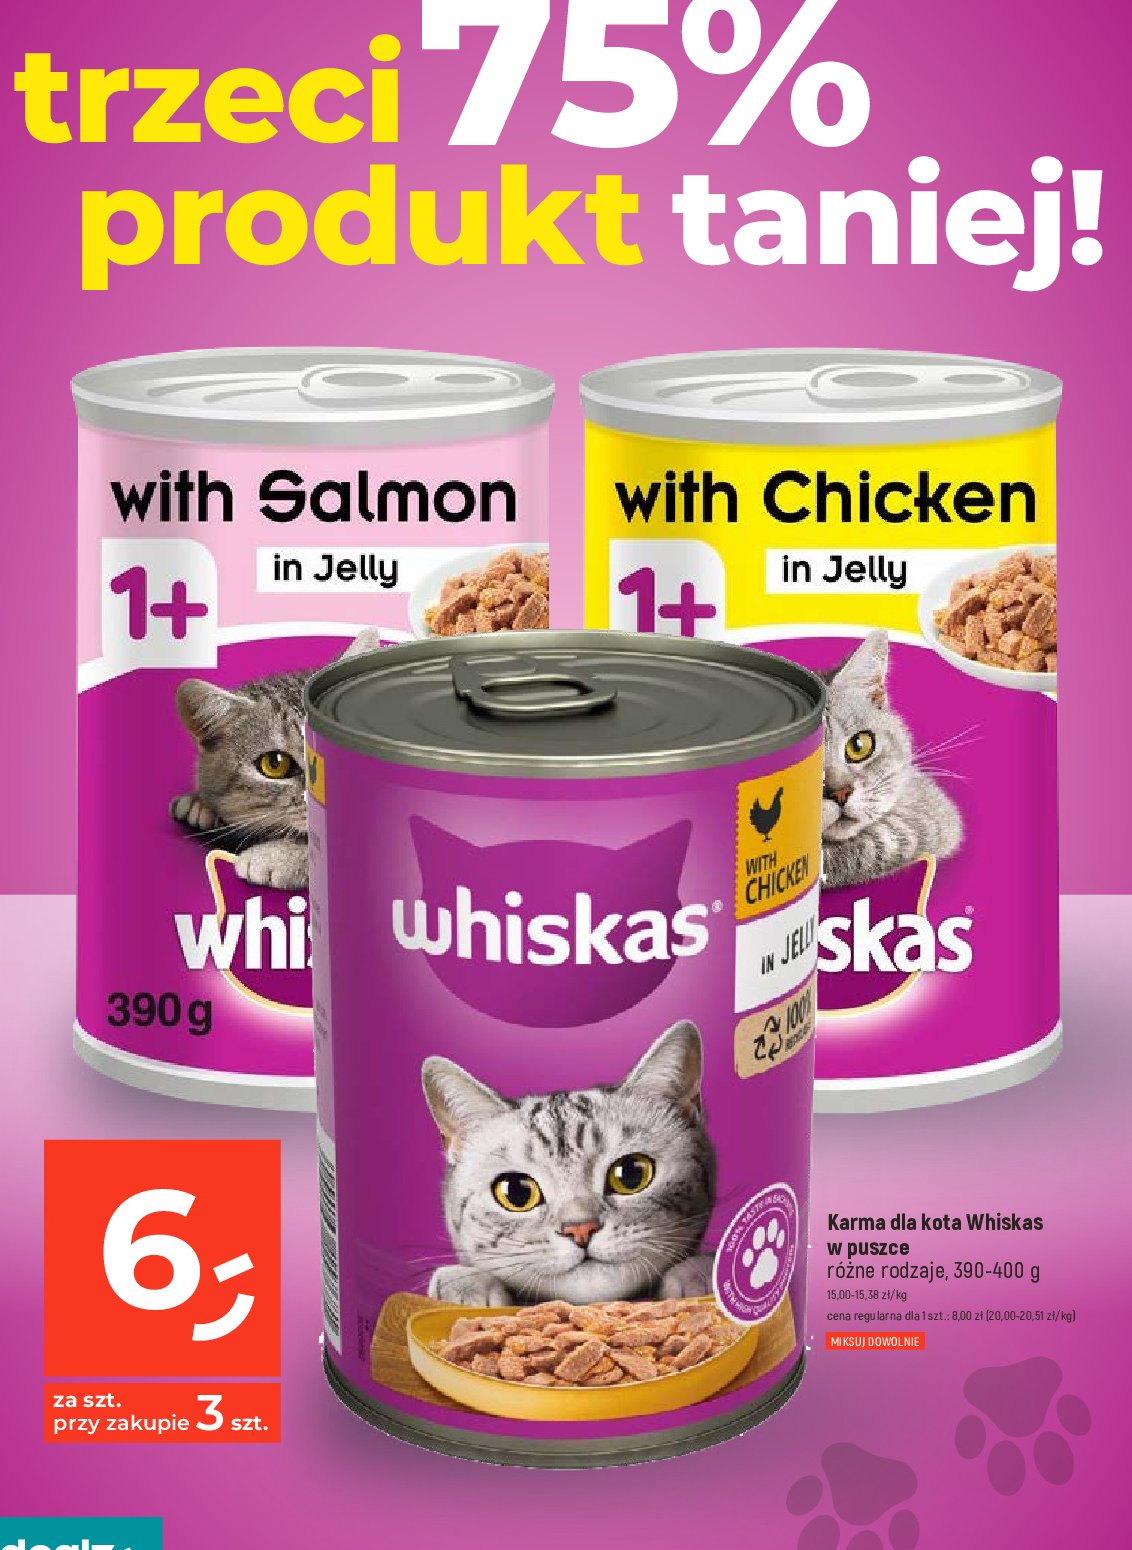 Karma dla kota z łososiem Whiskas promocja